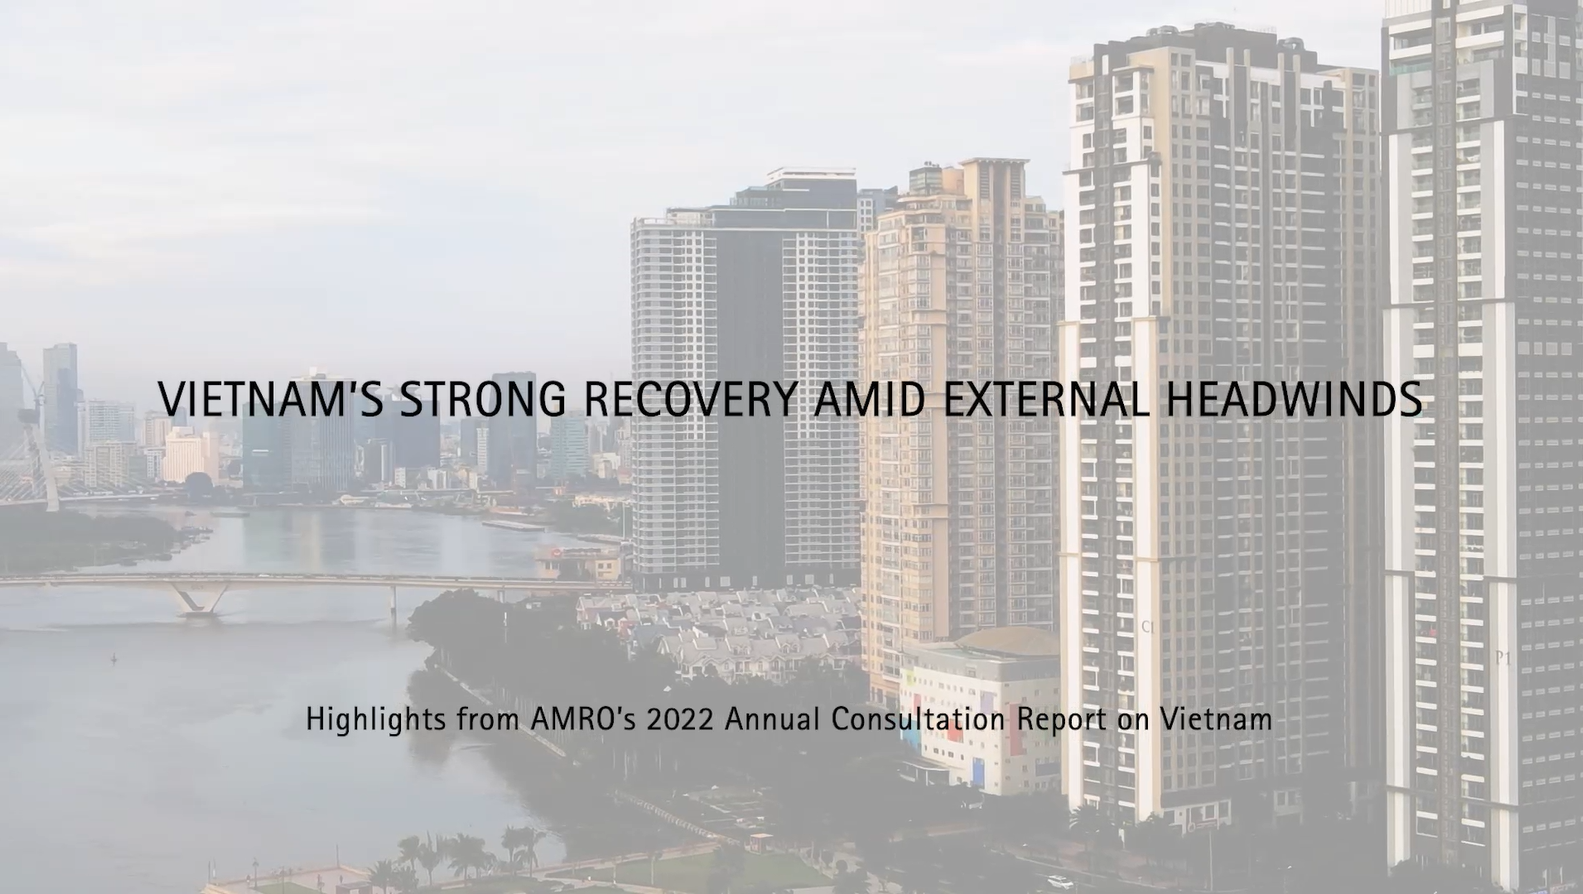 AMRO’s 2022 Annual Consultation Report on Vietnam